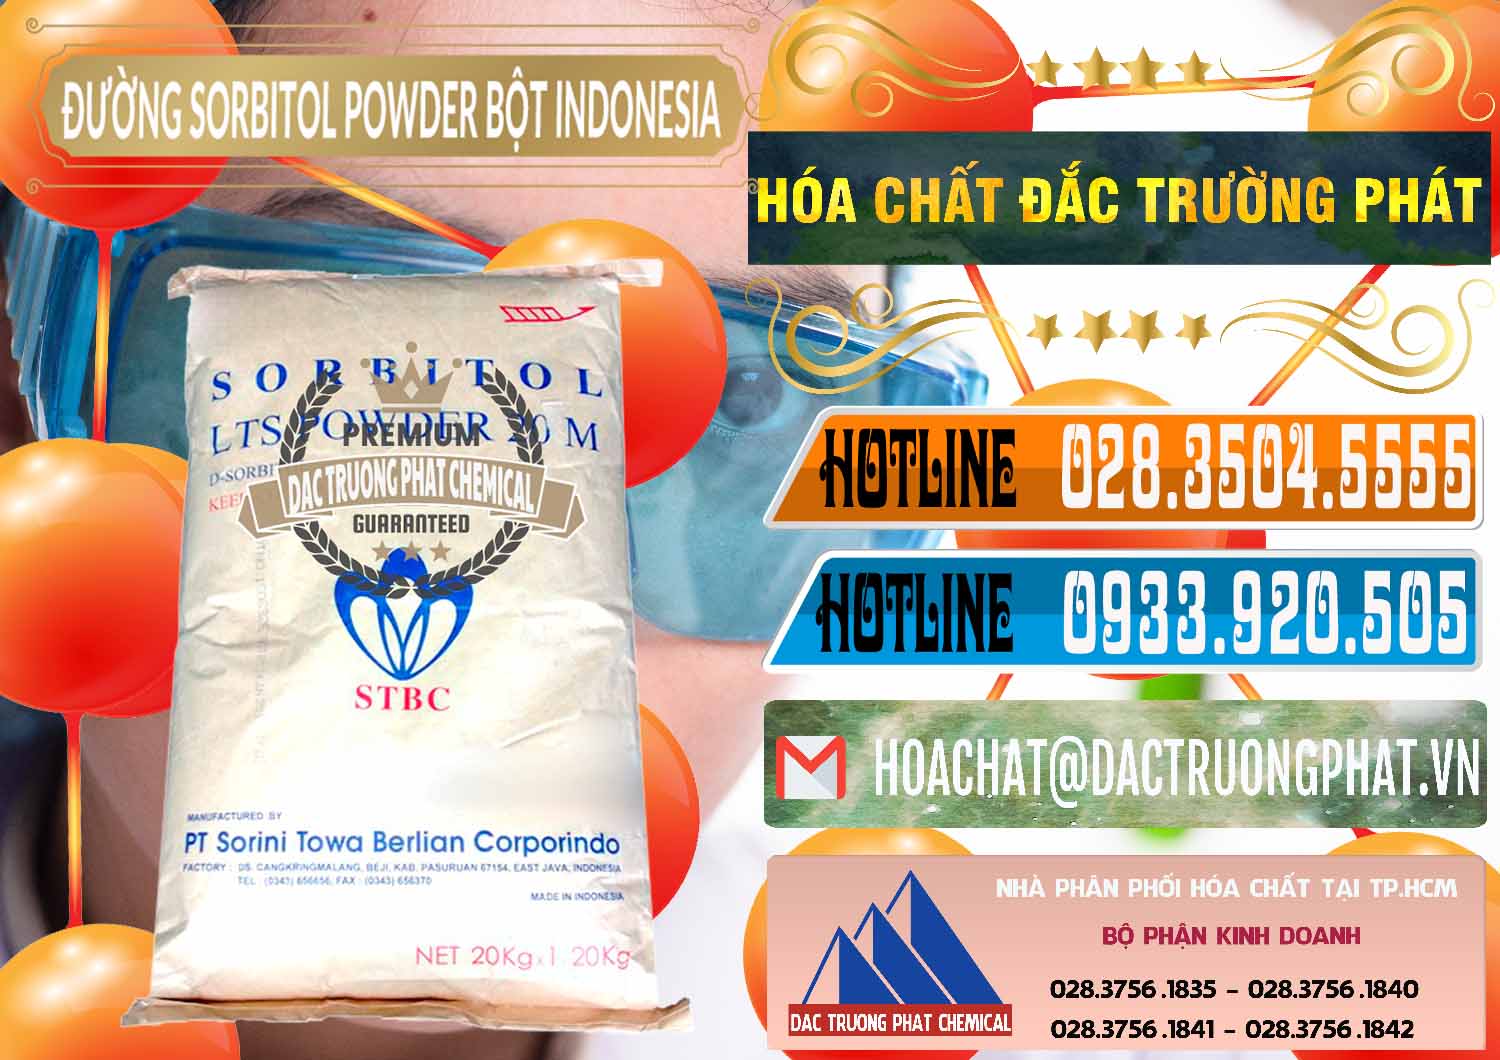 Cty chuyên bán _ cung ứng D-Sorbitol Bột - C6H14O6 Food Grade Indonesia - 0320 - Công ty chuyên kinh doanh - phân phối hóa chất tại TP.HCM - stmp.net